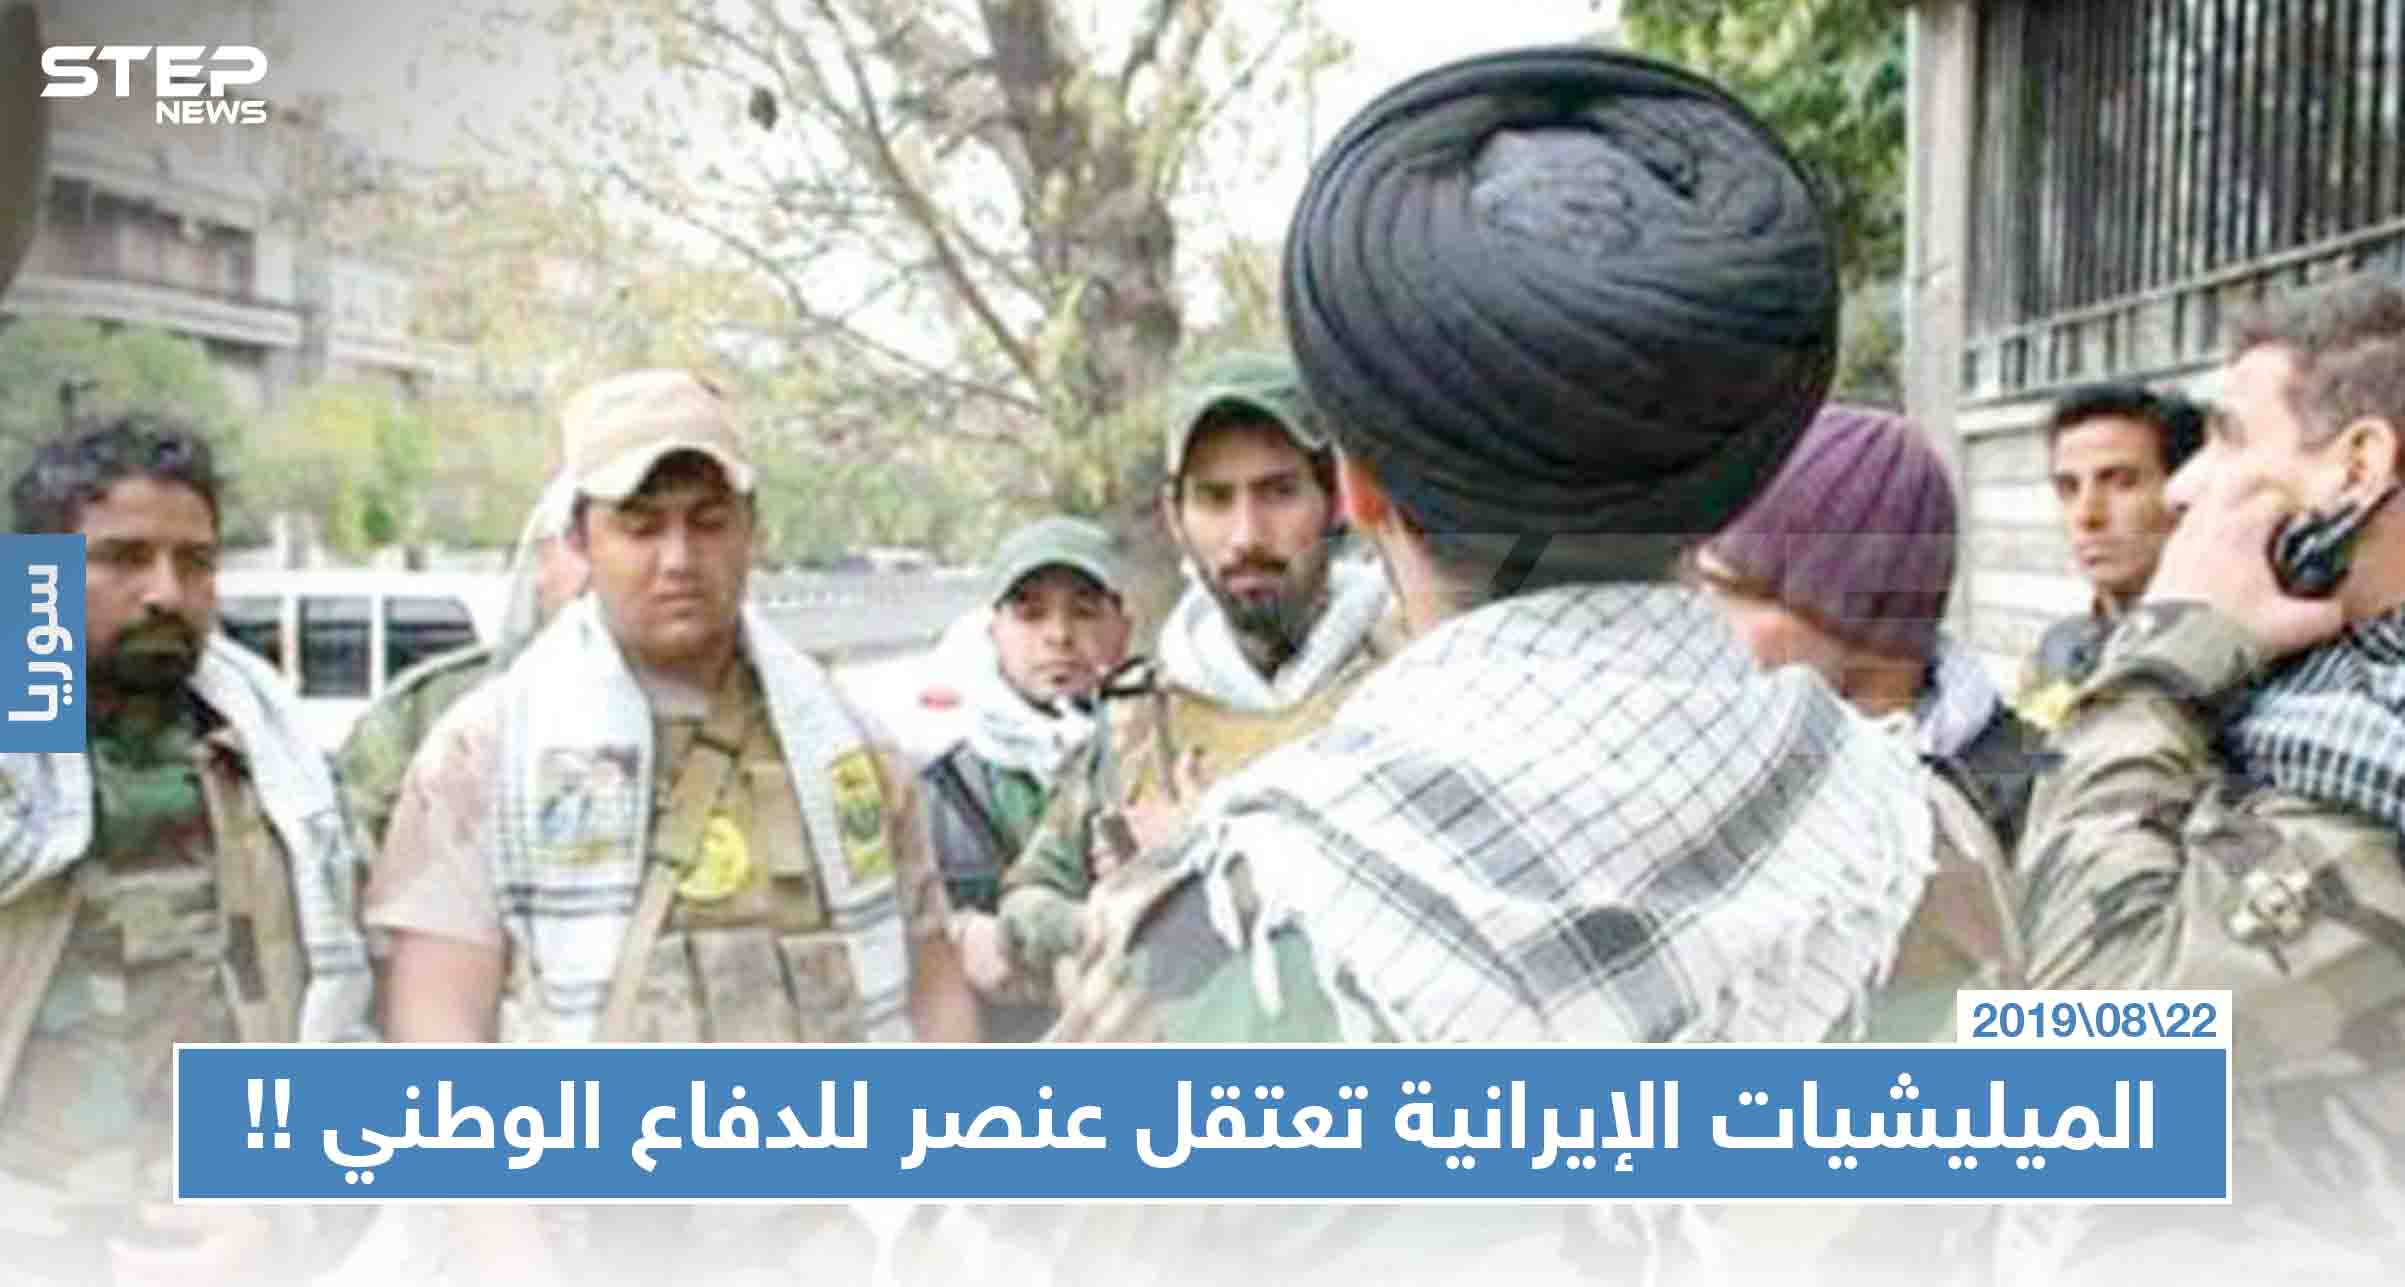 الميليشيات الإيرانية تعتقل عنصر للدفاع الوطني بتهمة تصوير مقراتهم الأمنية، والتفاصيل!!